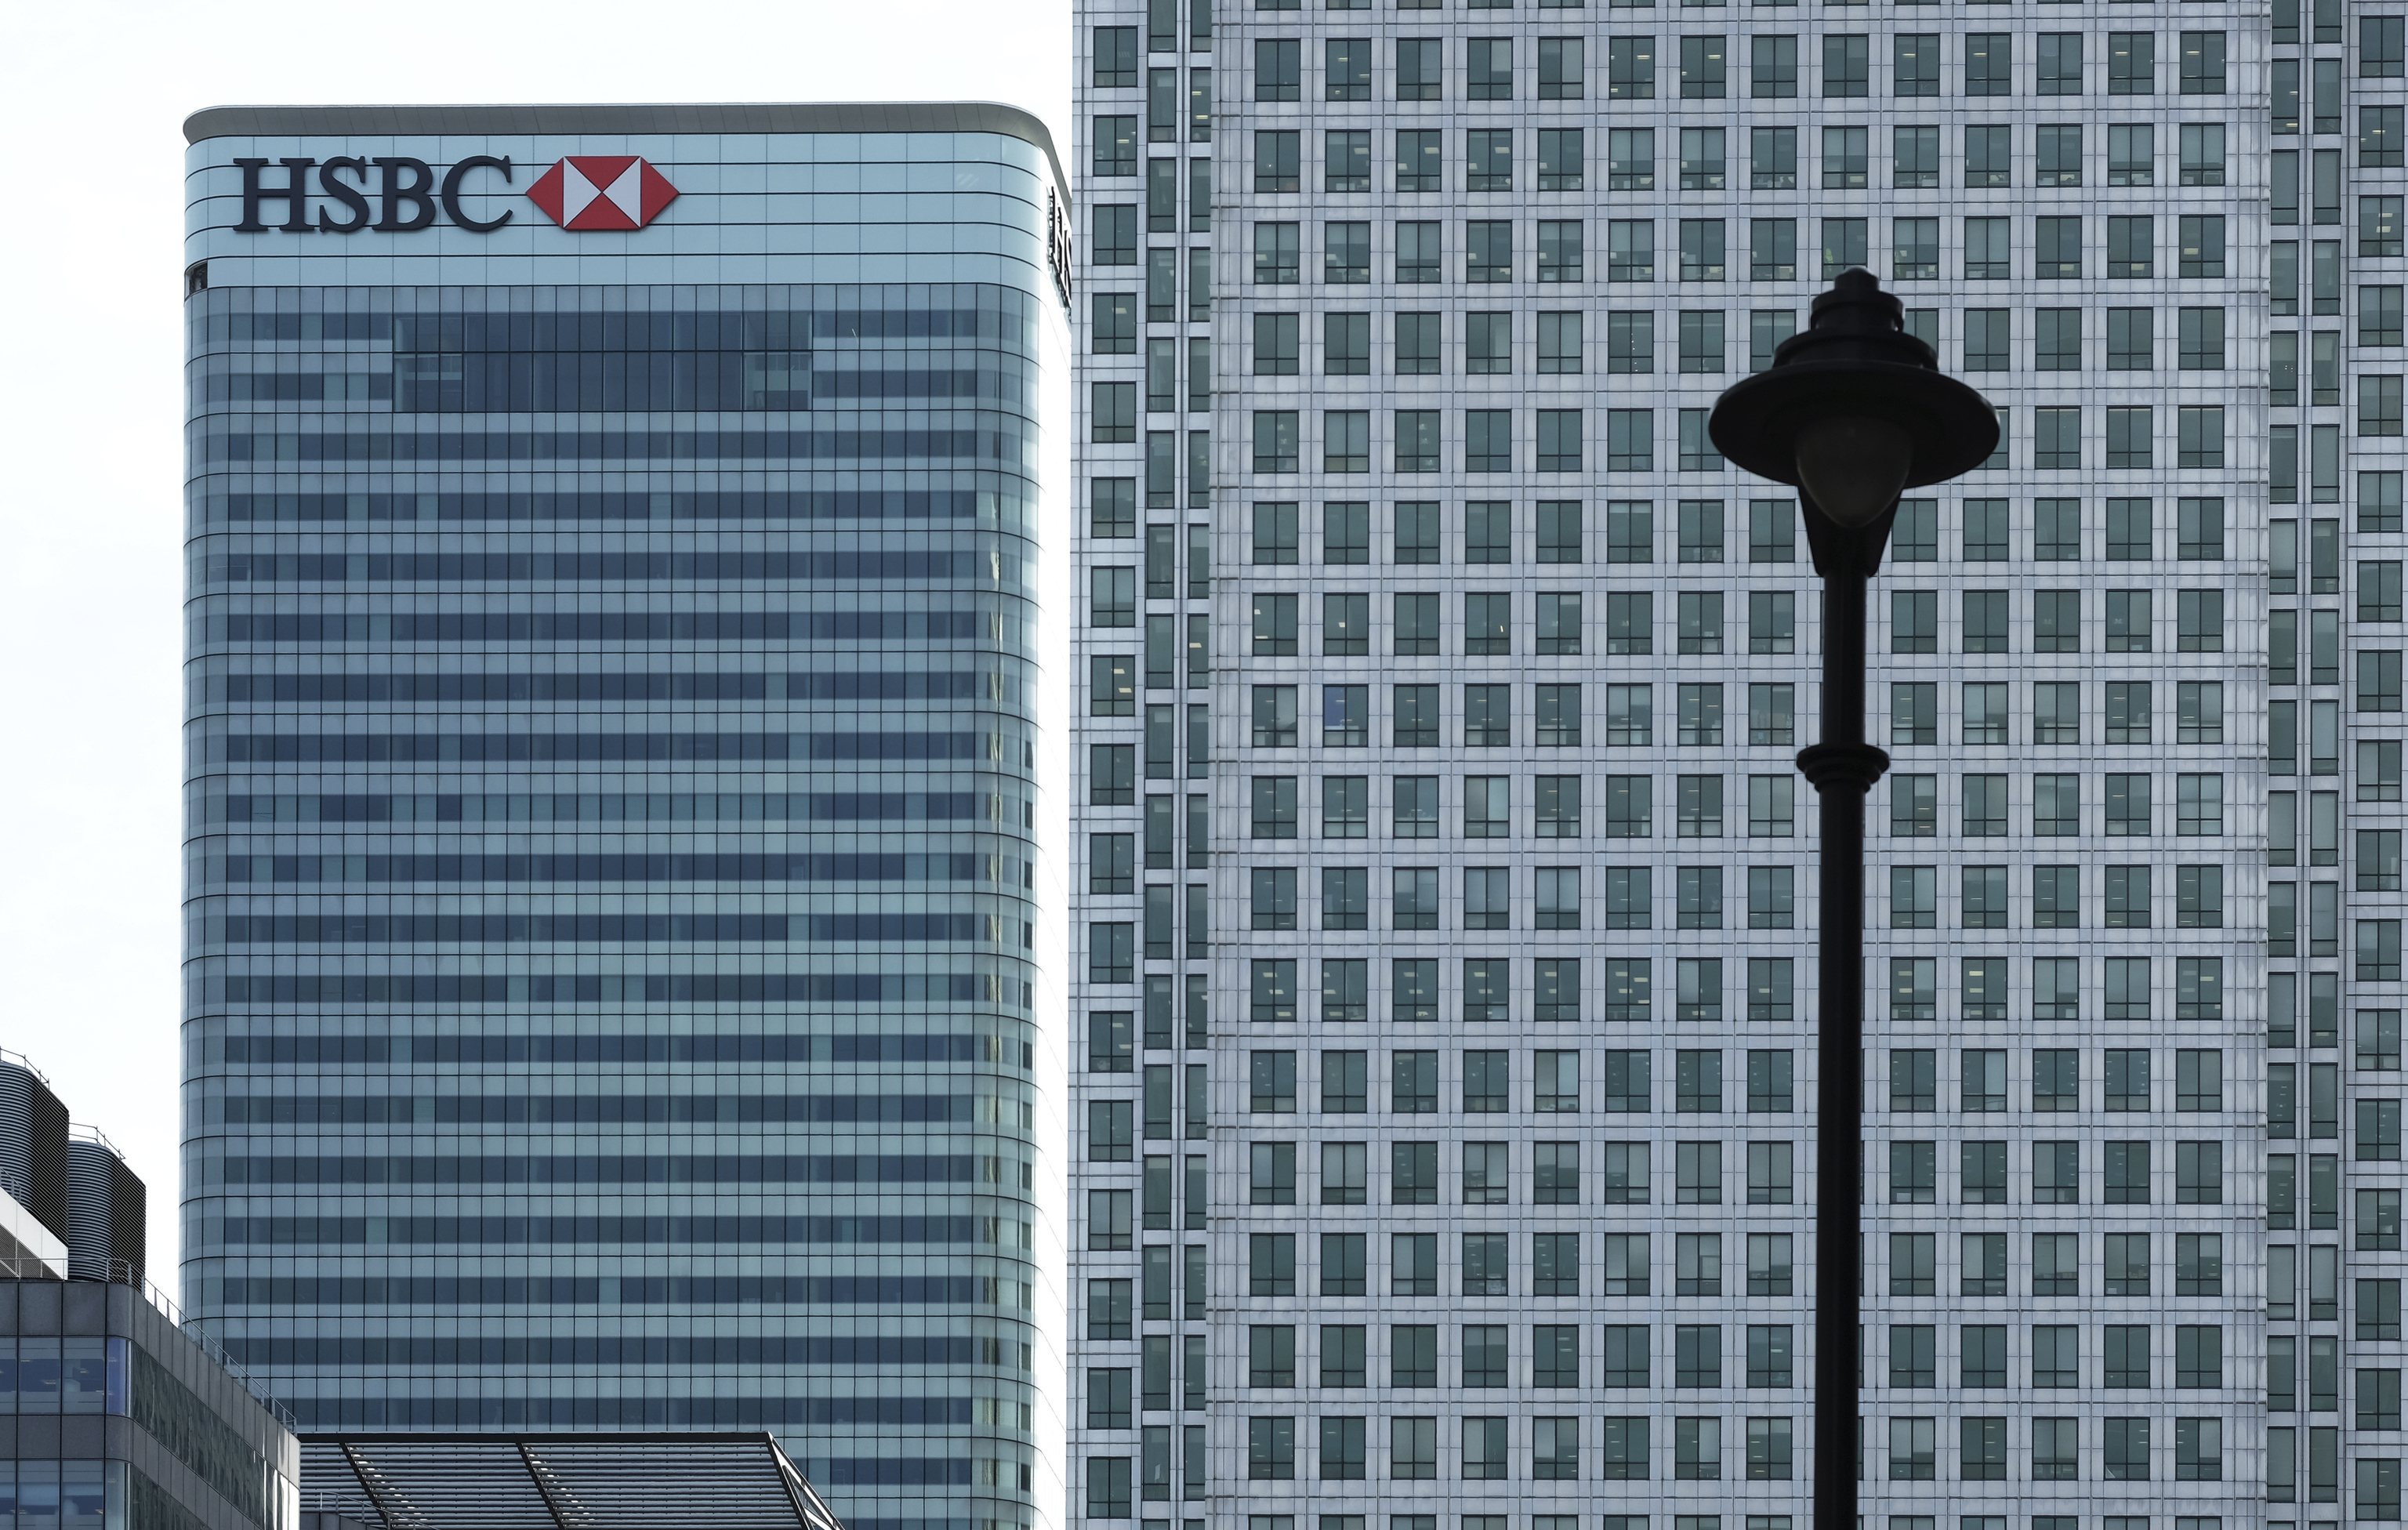 Sede de HSBC en el complejo inmobiliario Canary Wharf, en el centro de Londres.